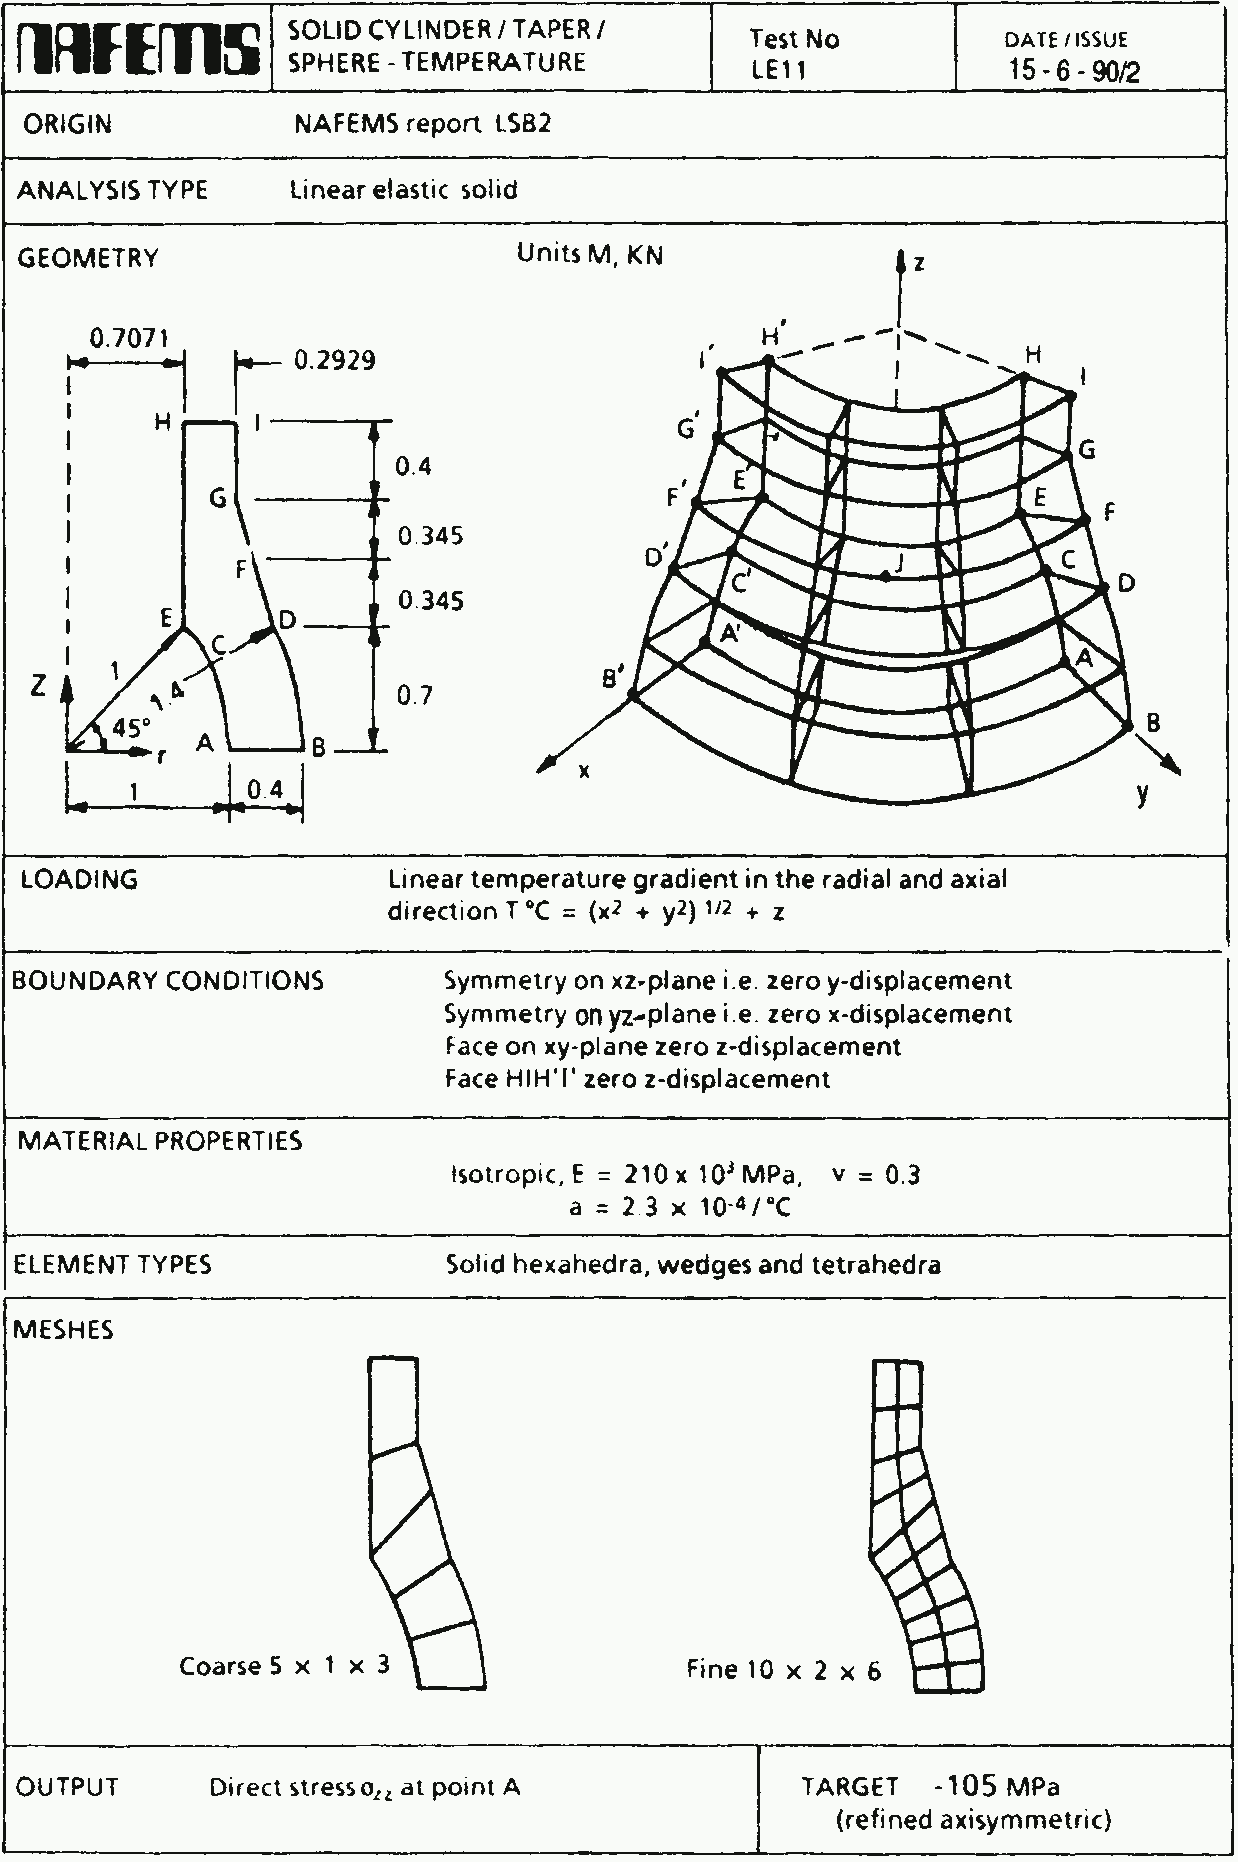 Figure 22: Formulation of the NAFEMS LE11 problem.